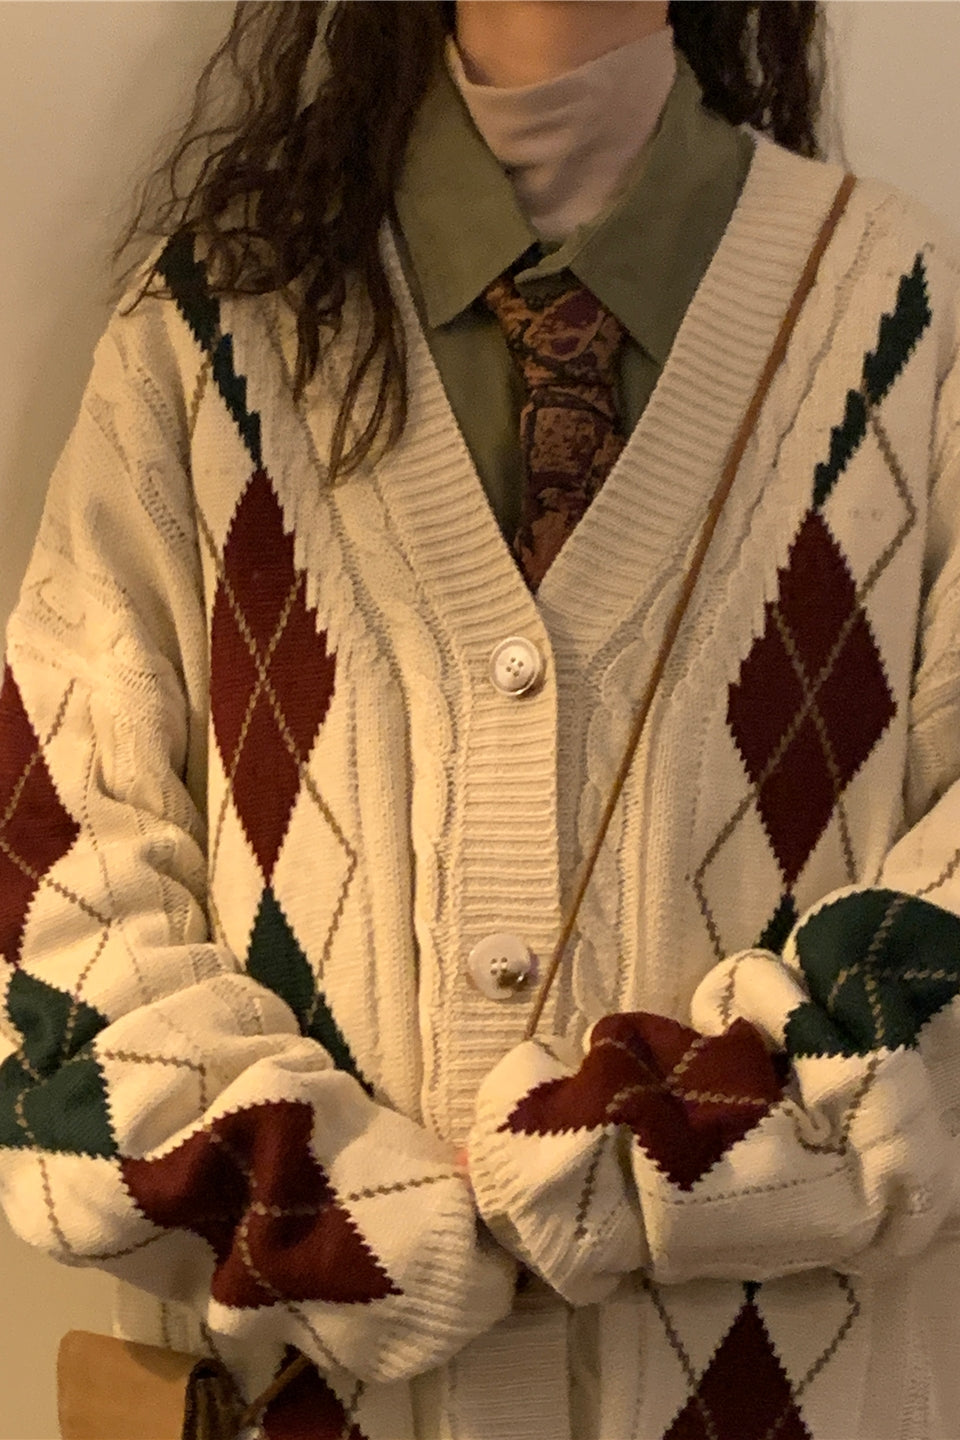 Loose Fitting American Vintage Plaid Cardigan Sweater Jacket